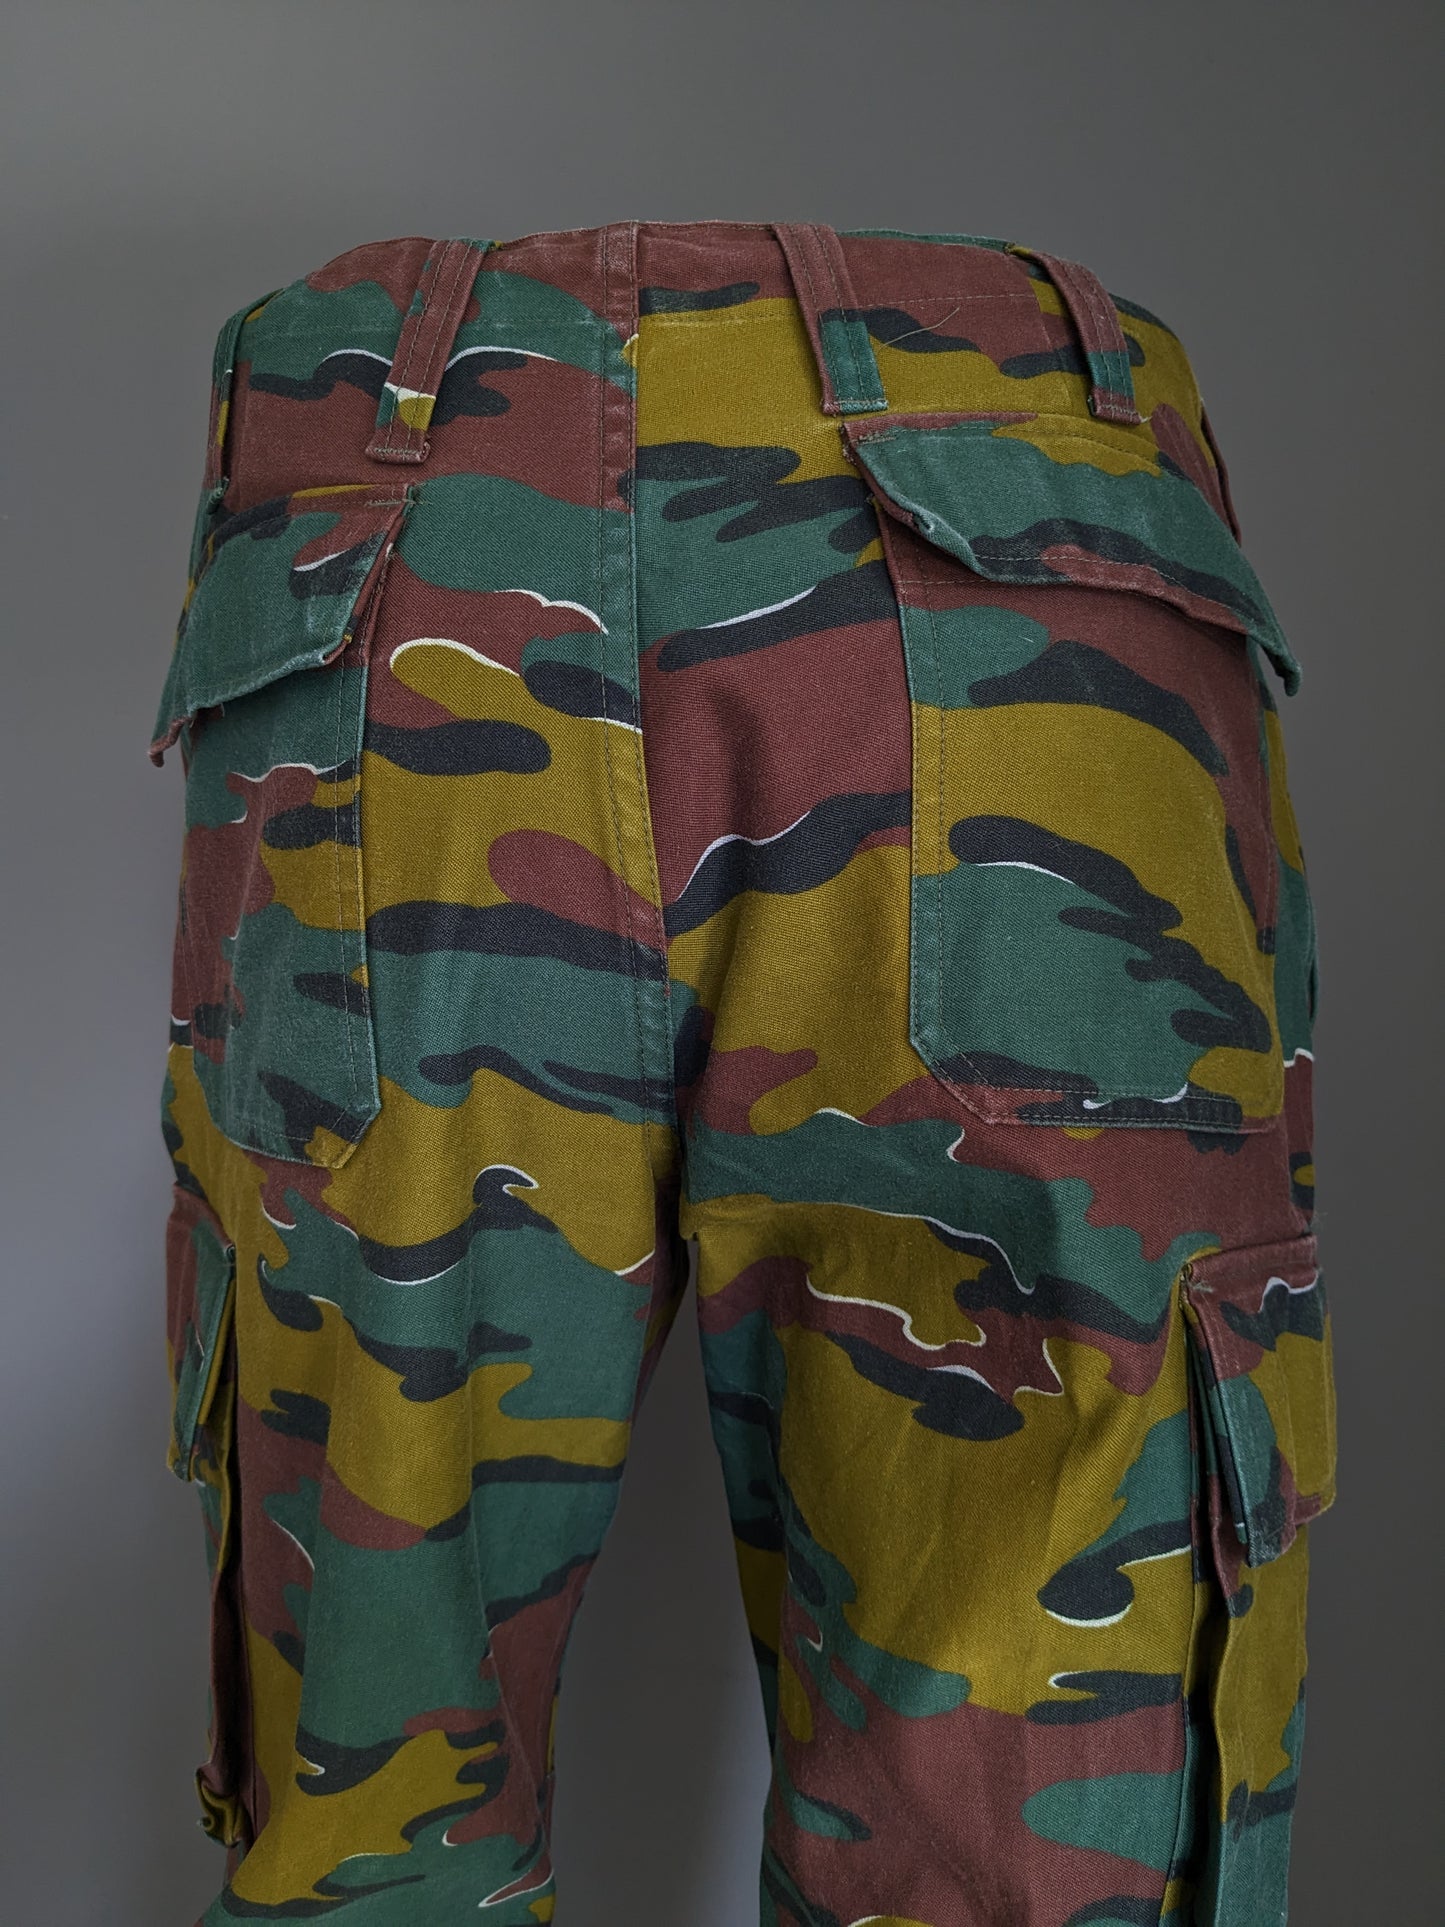 Pantalon de l'armée / de l'armée. Impression de camouflage vert brun. Taille M / L.